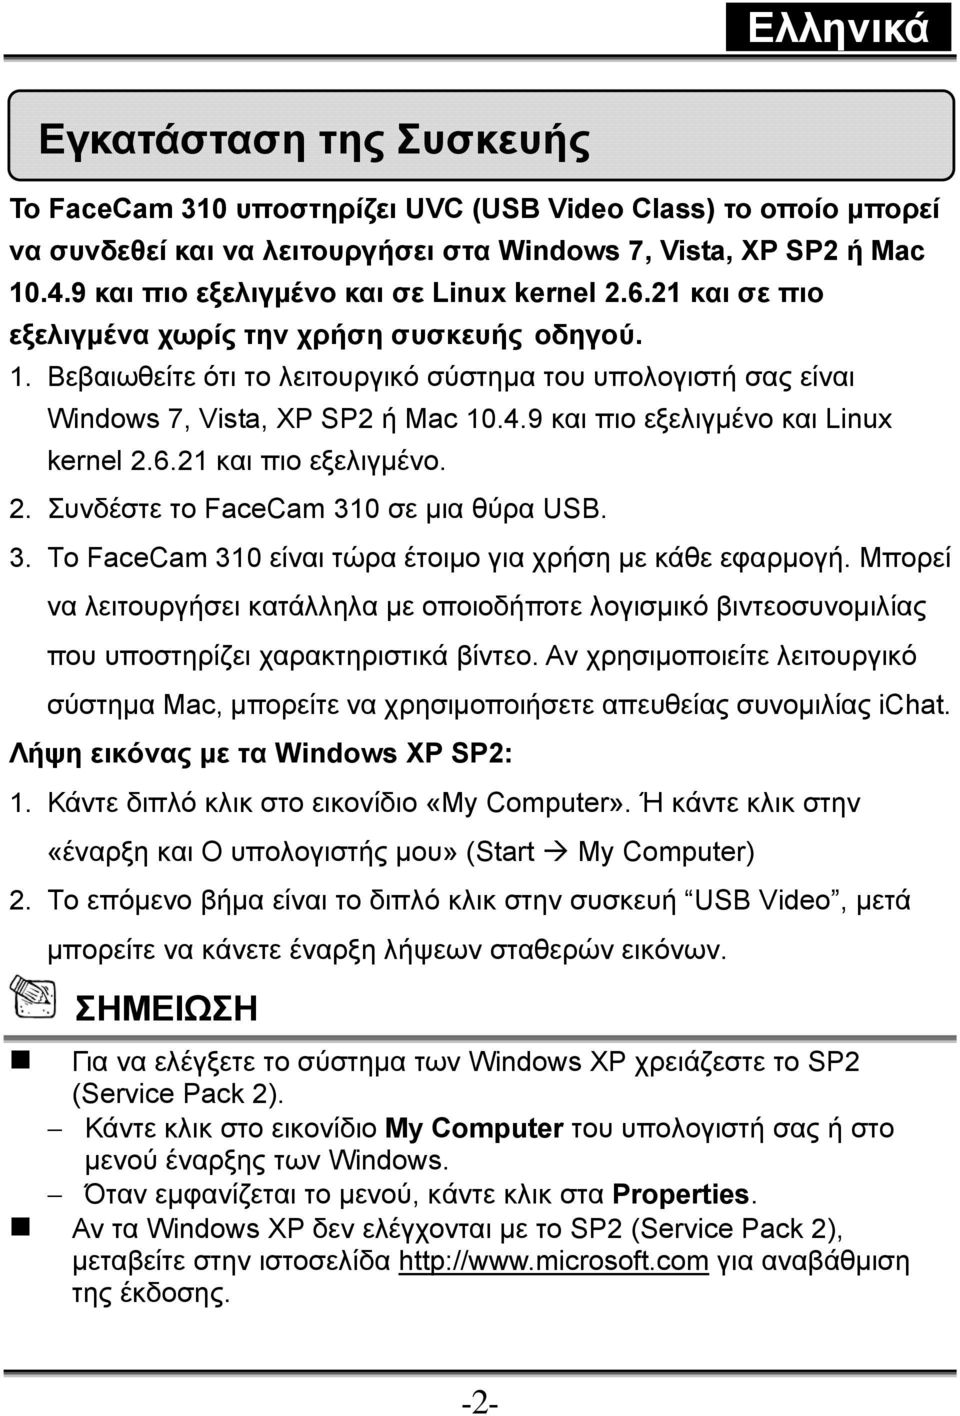 Βεβαιωθείτε ότι το λειτουργικό σύστημα του υπολογιστή σας είναι Windows 7, Vista, XP SP2 ή Mac 10.4.9 και πιο εξελιγμένο και Linux kernel 2.6.21 και πιο εξελιγμένο. 2. Συνδέστε το FaceCam 310 σε μια θύρα USB.